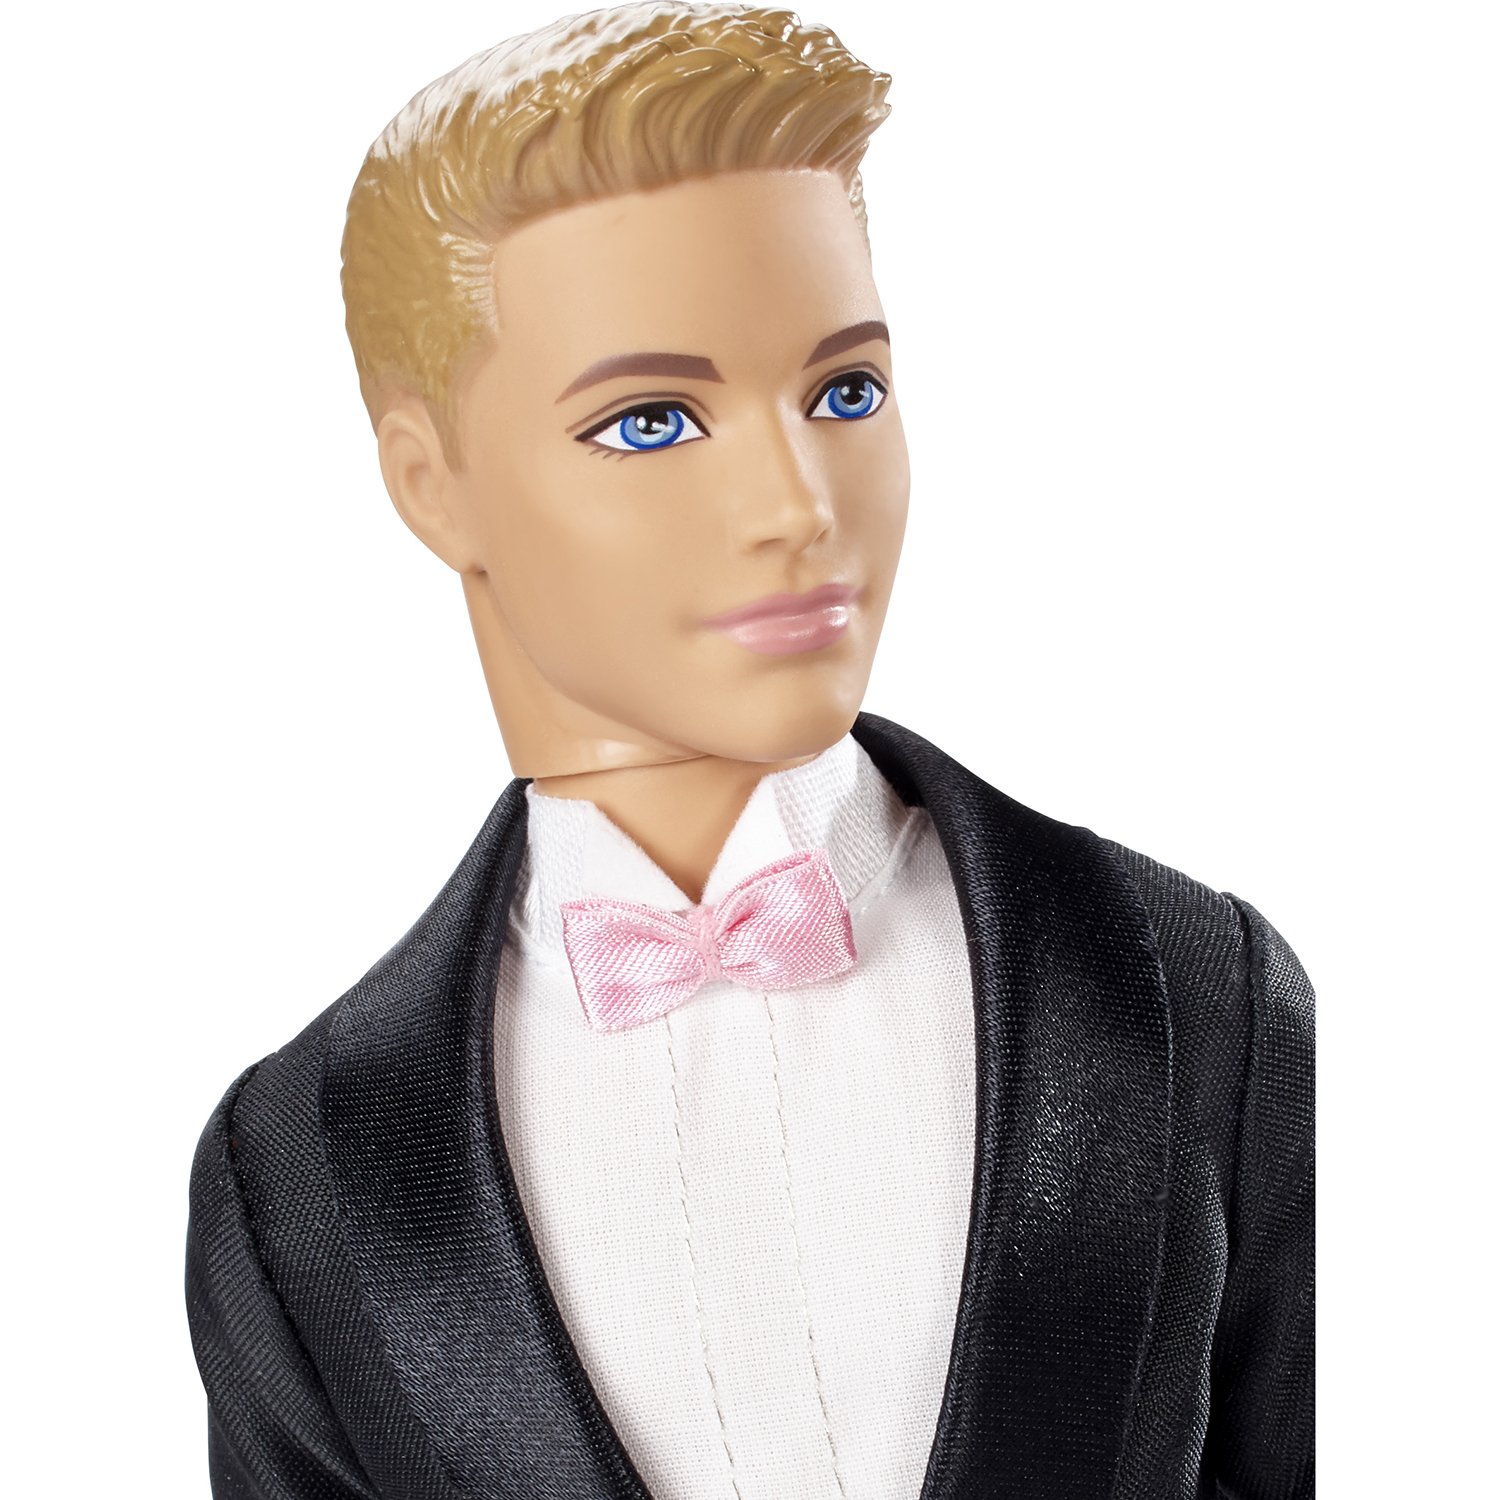 Кукла Barbie Жених Кен, 29 см, DVP39